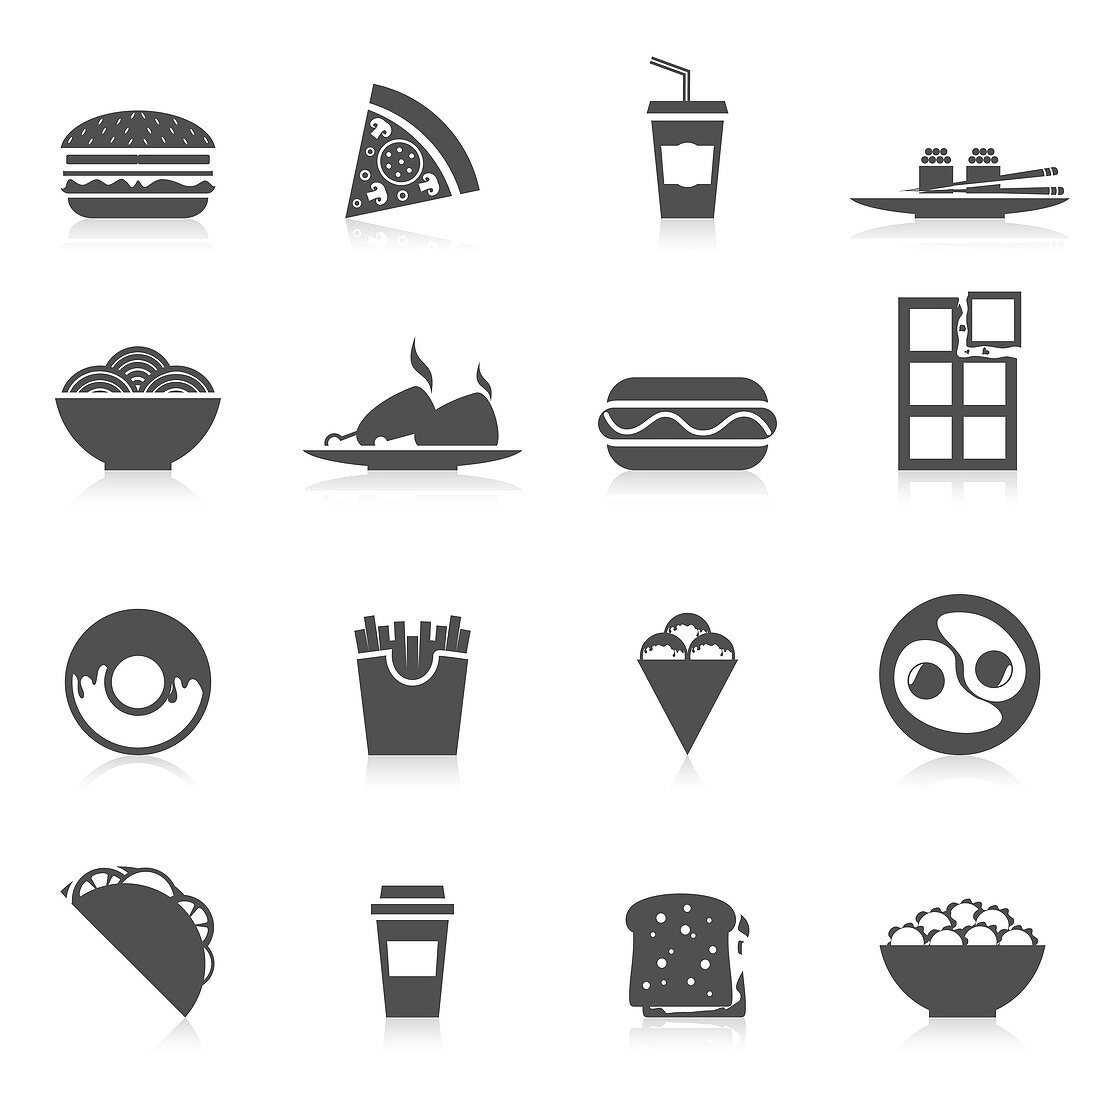 Fast food icons, illustration